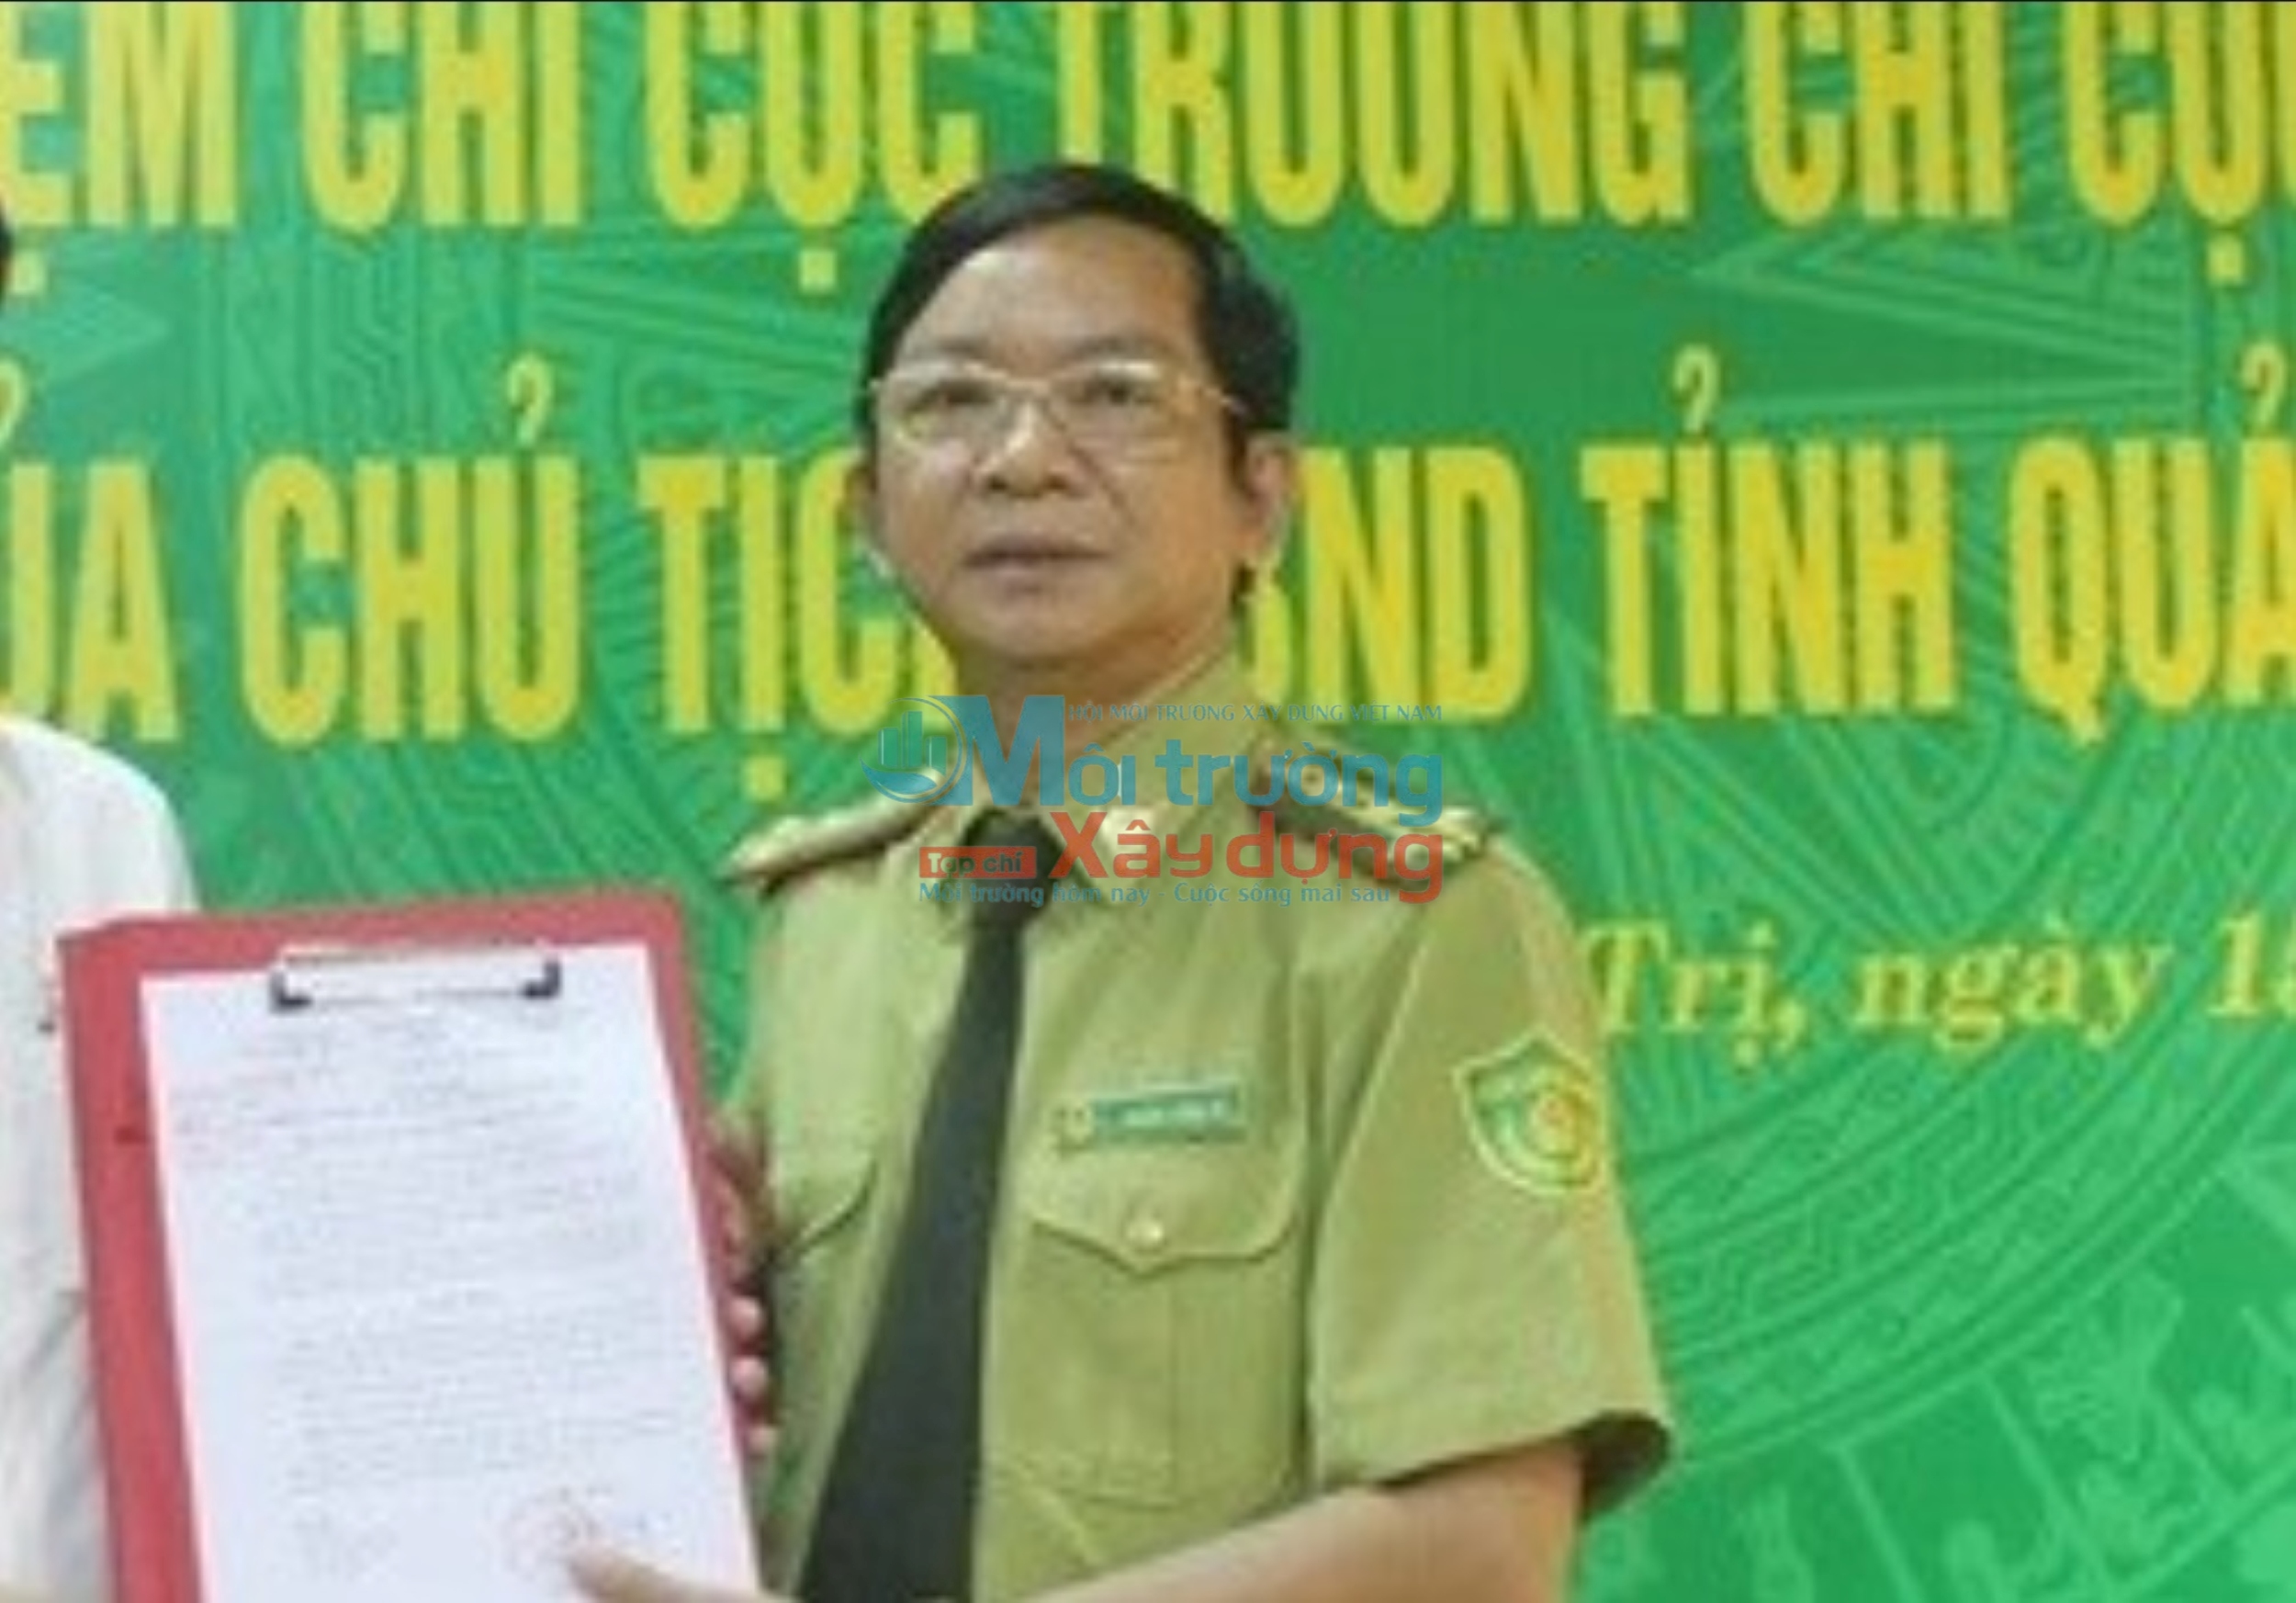 Quảng Trị: Gây thiệt hại ngân sách nhà nước, nguyên Chi cục trưởng Chi cục Kiểm lâm tỉnh bị khởi tố